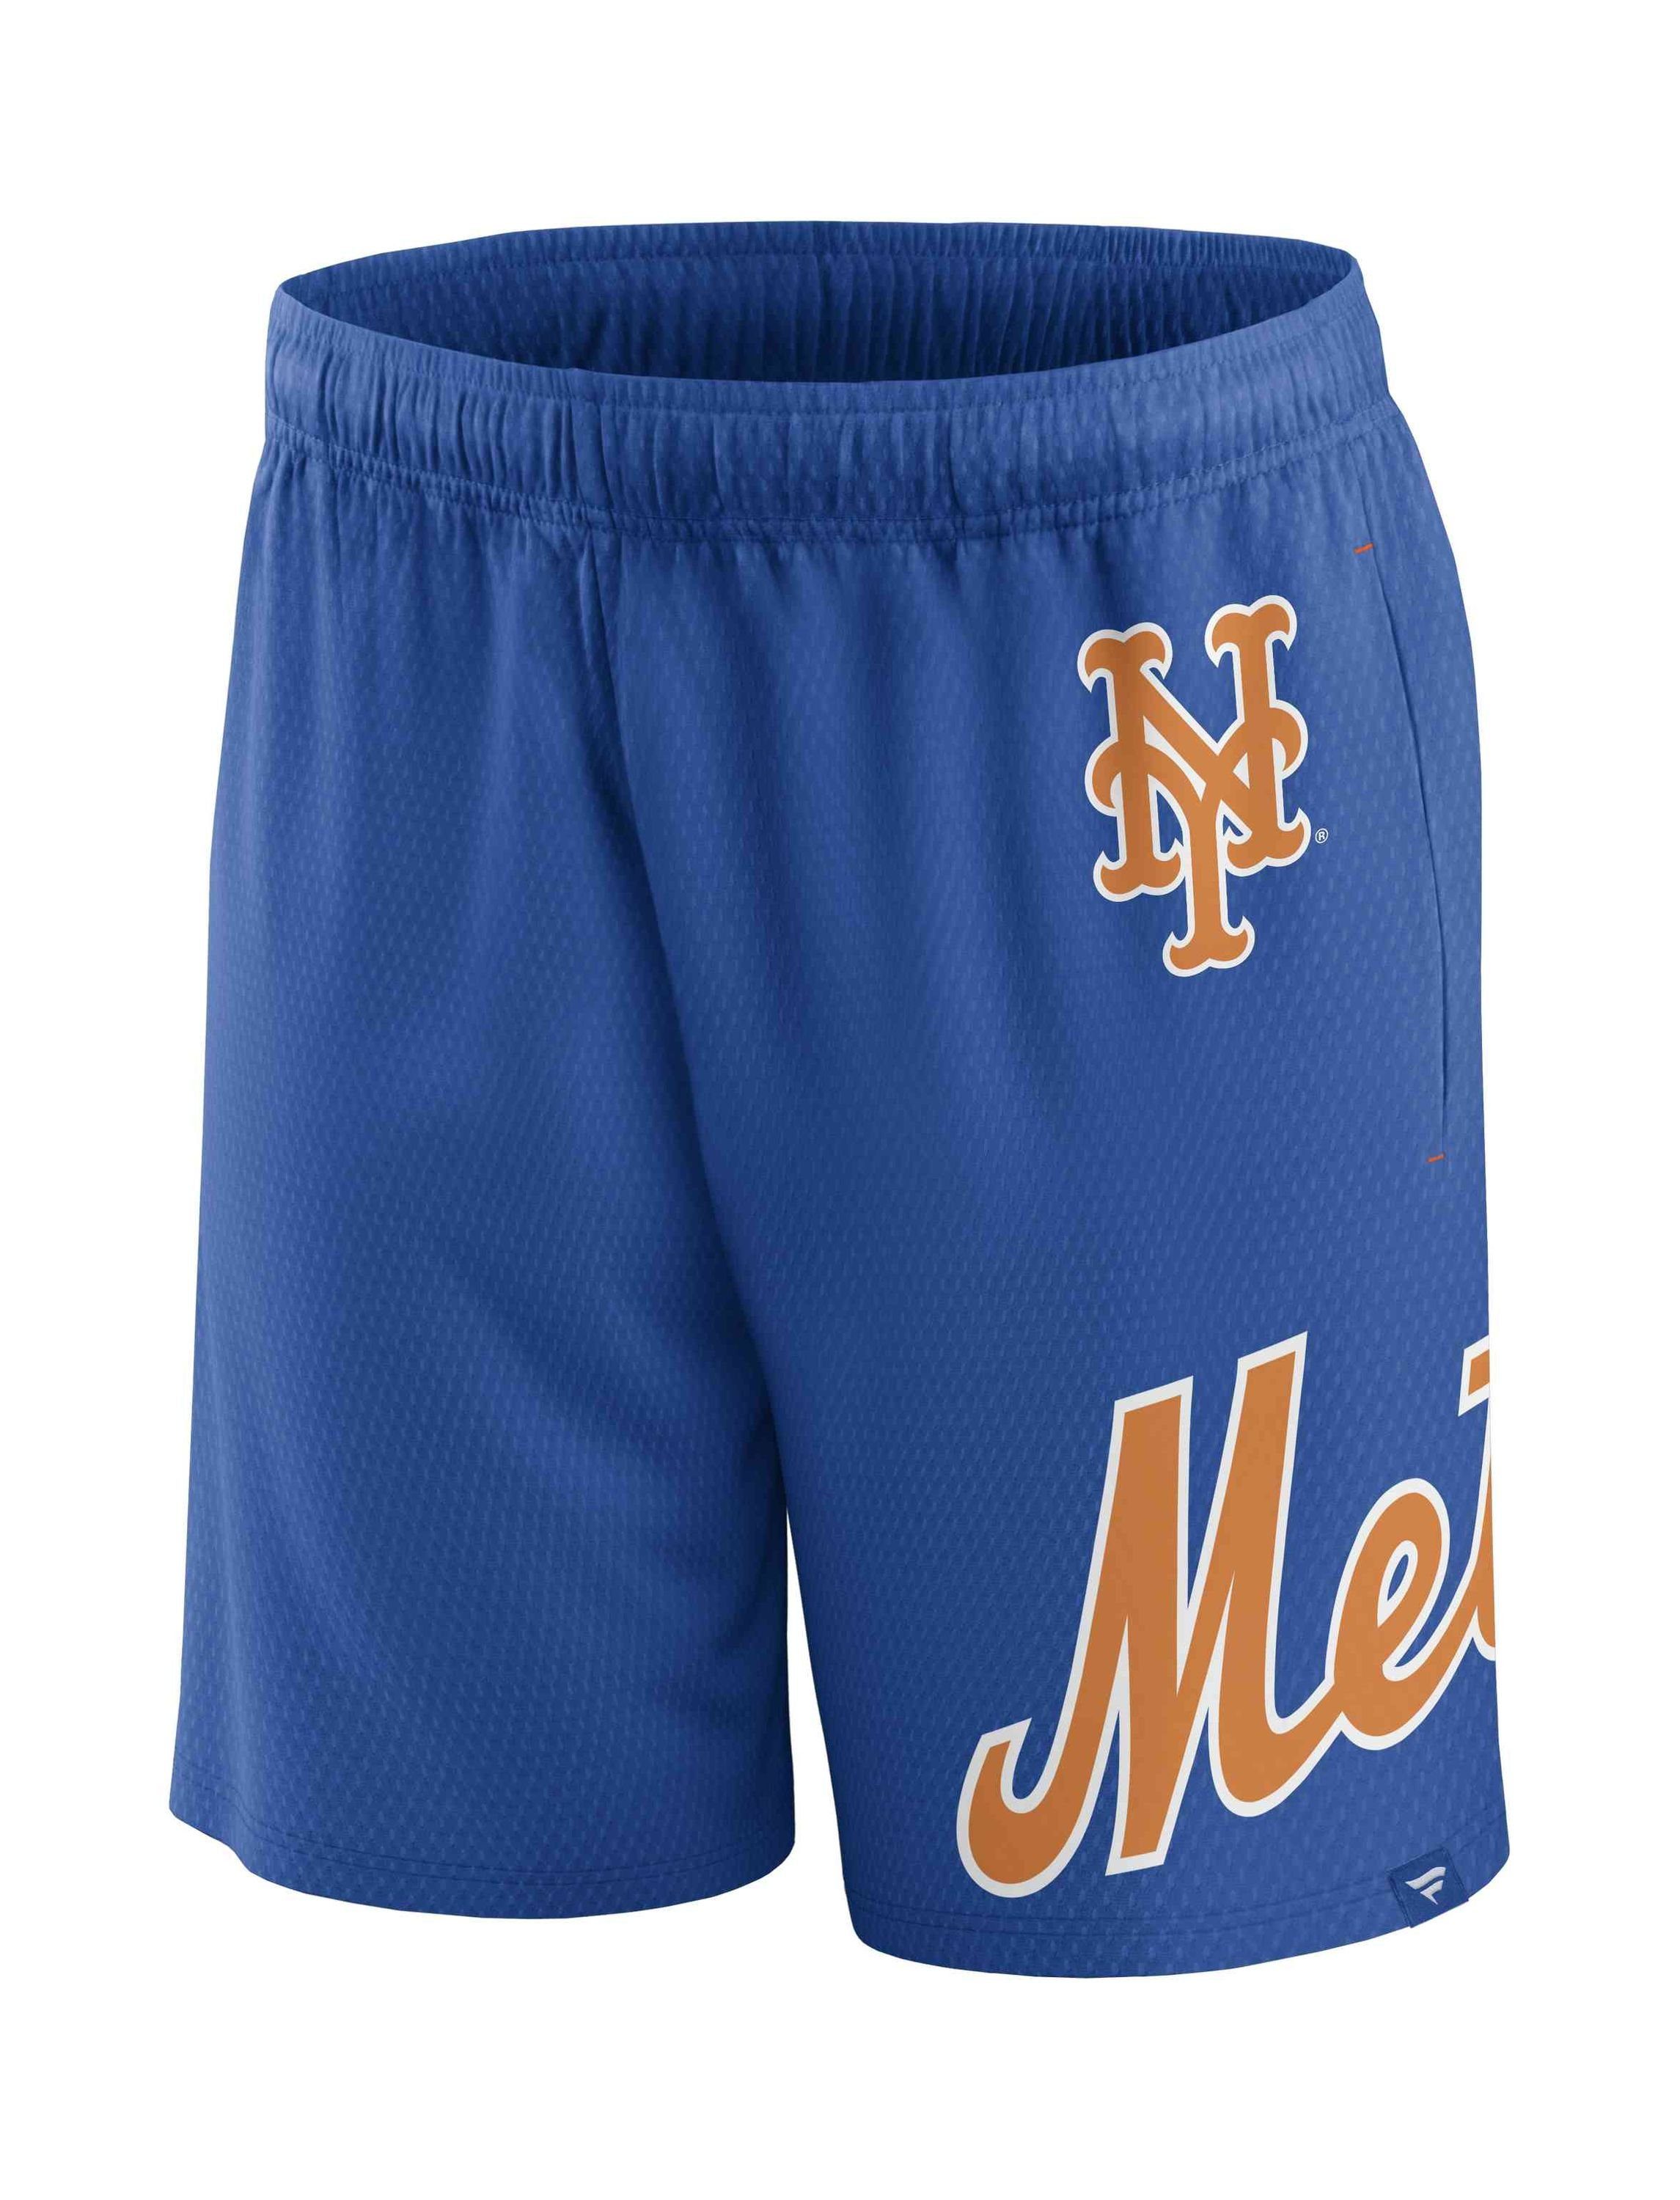 Fanatics New Mesh York Mets MLB Shorts